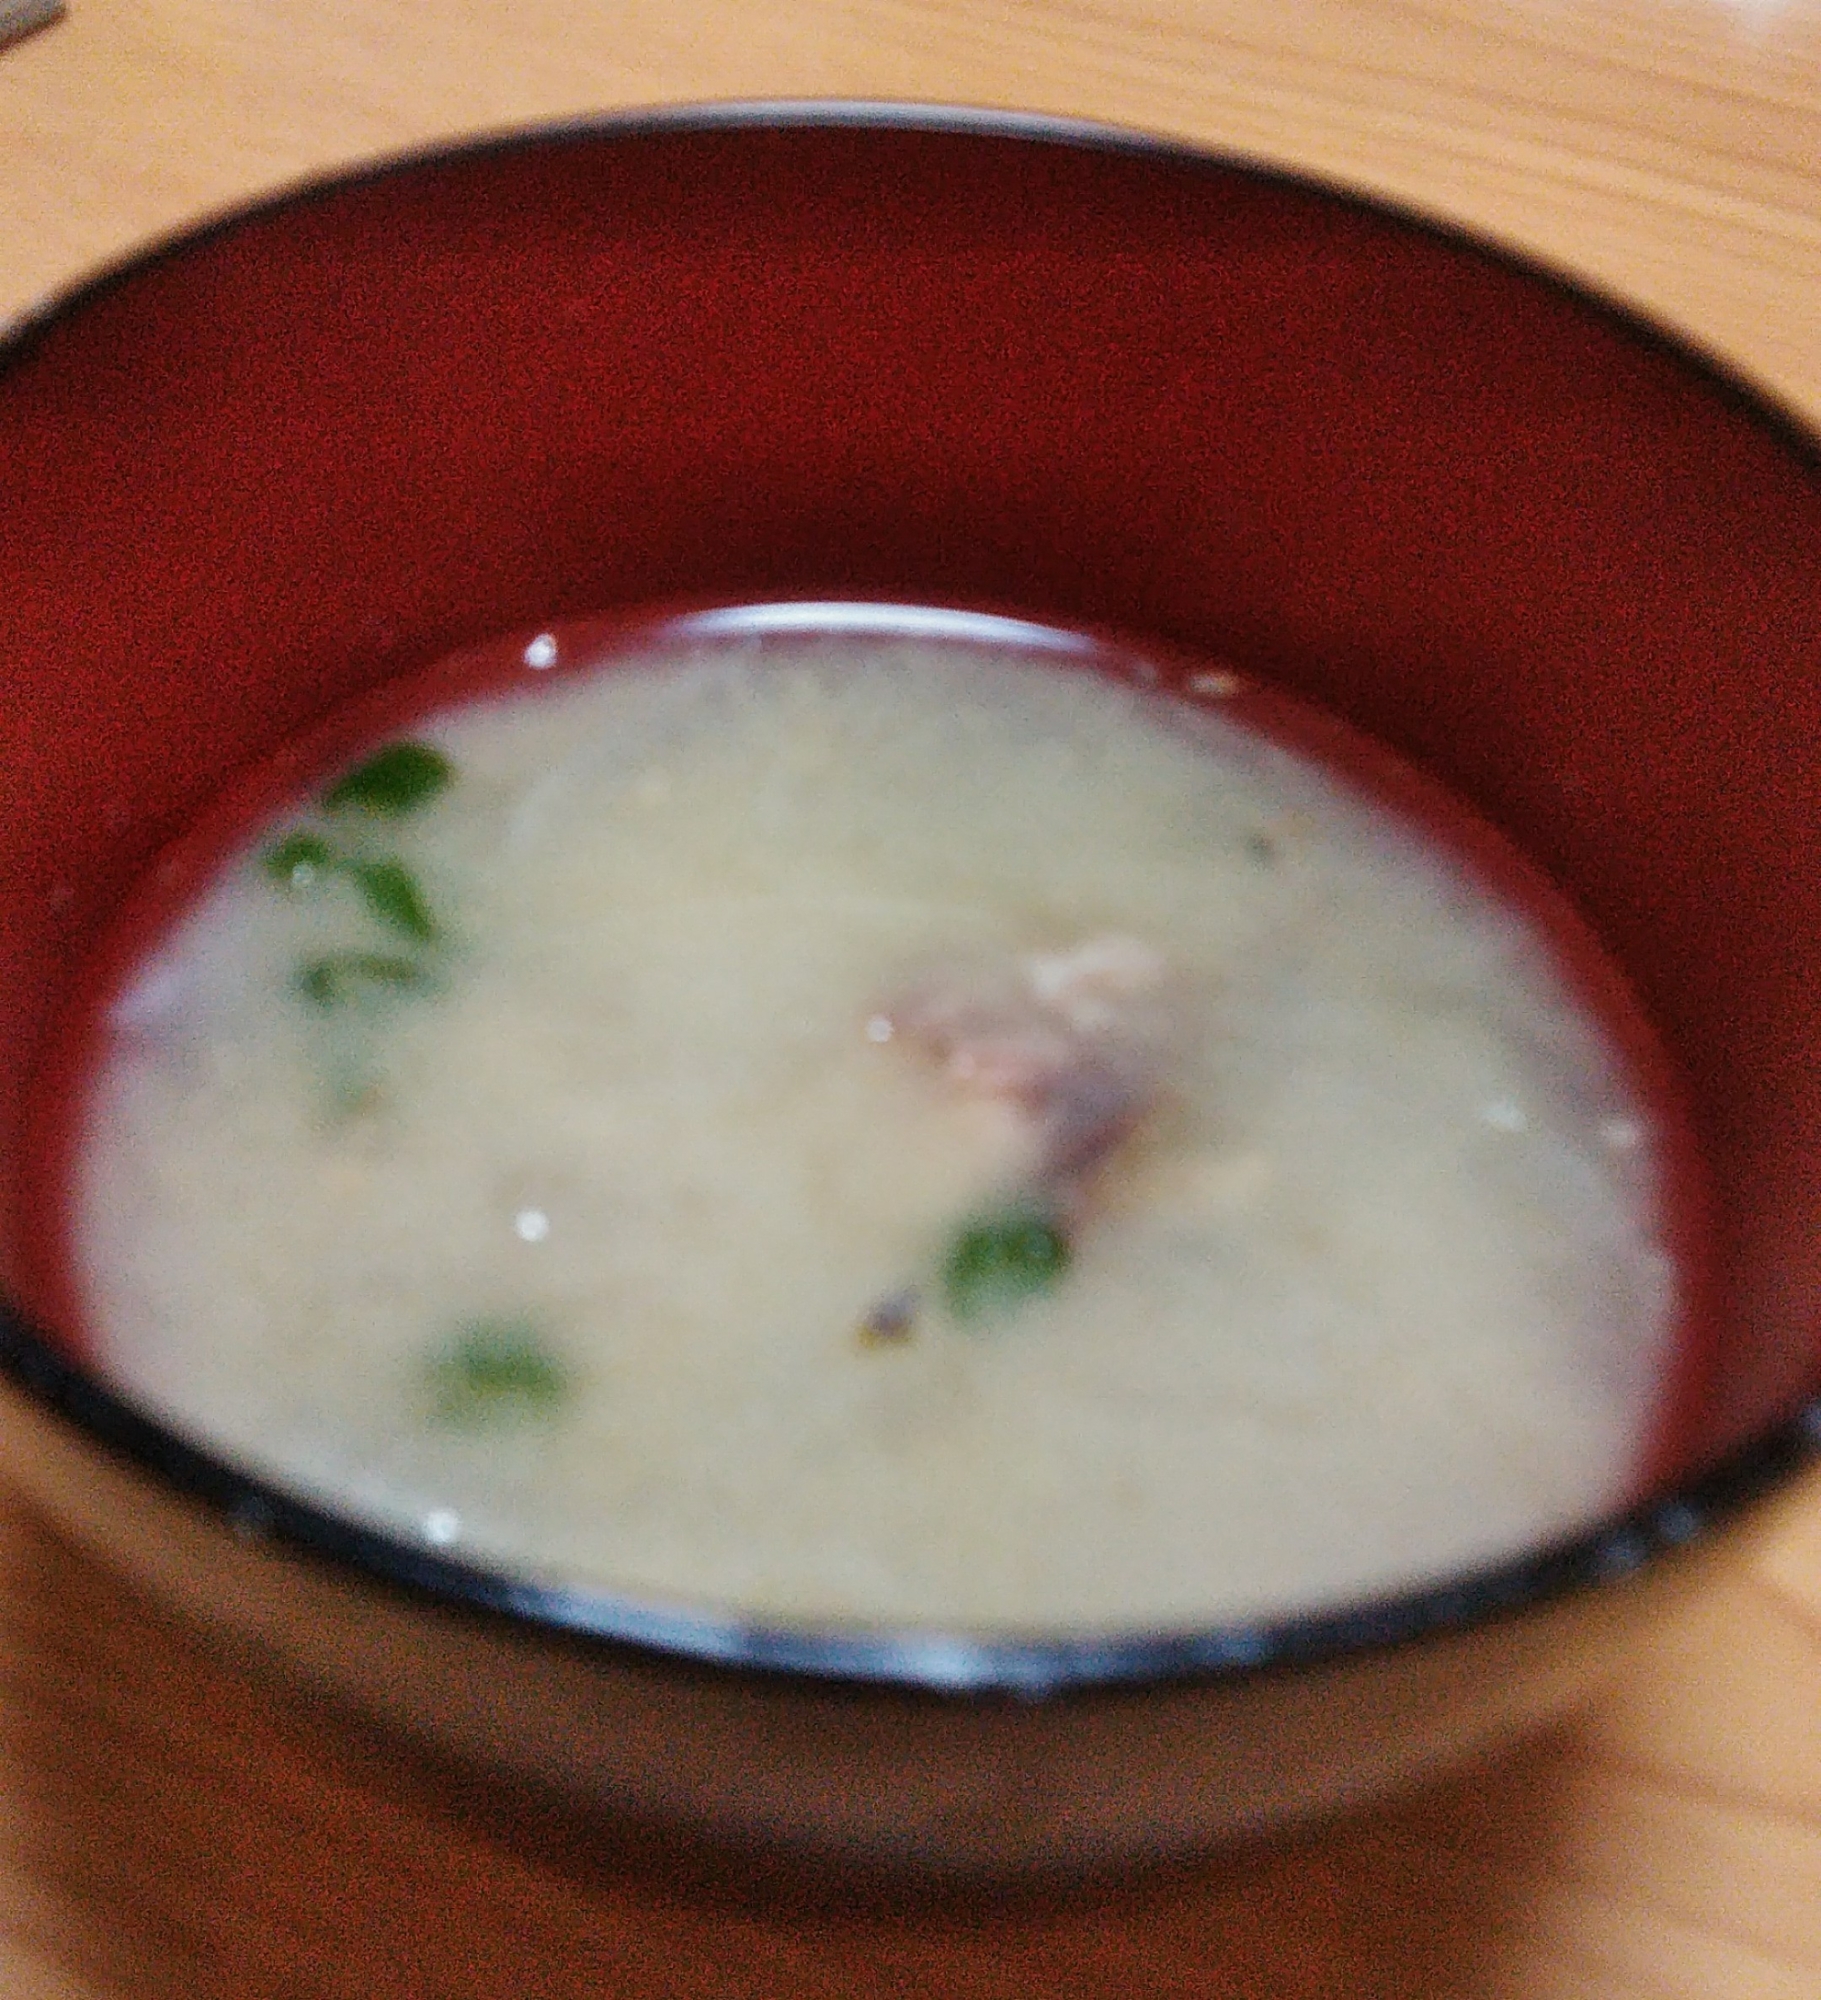 サバ水煮缶と大根と生姜ネギの味噌汁